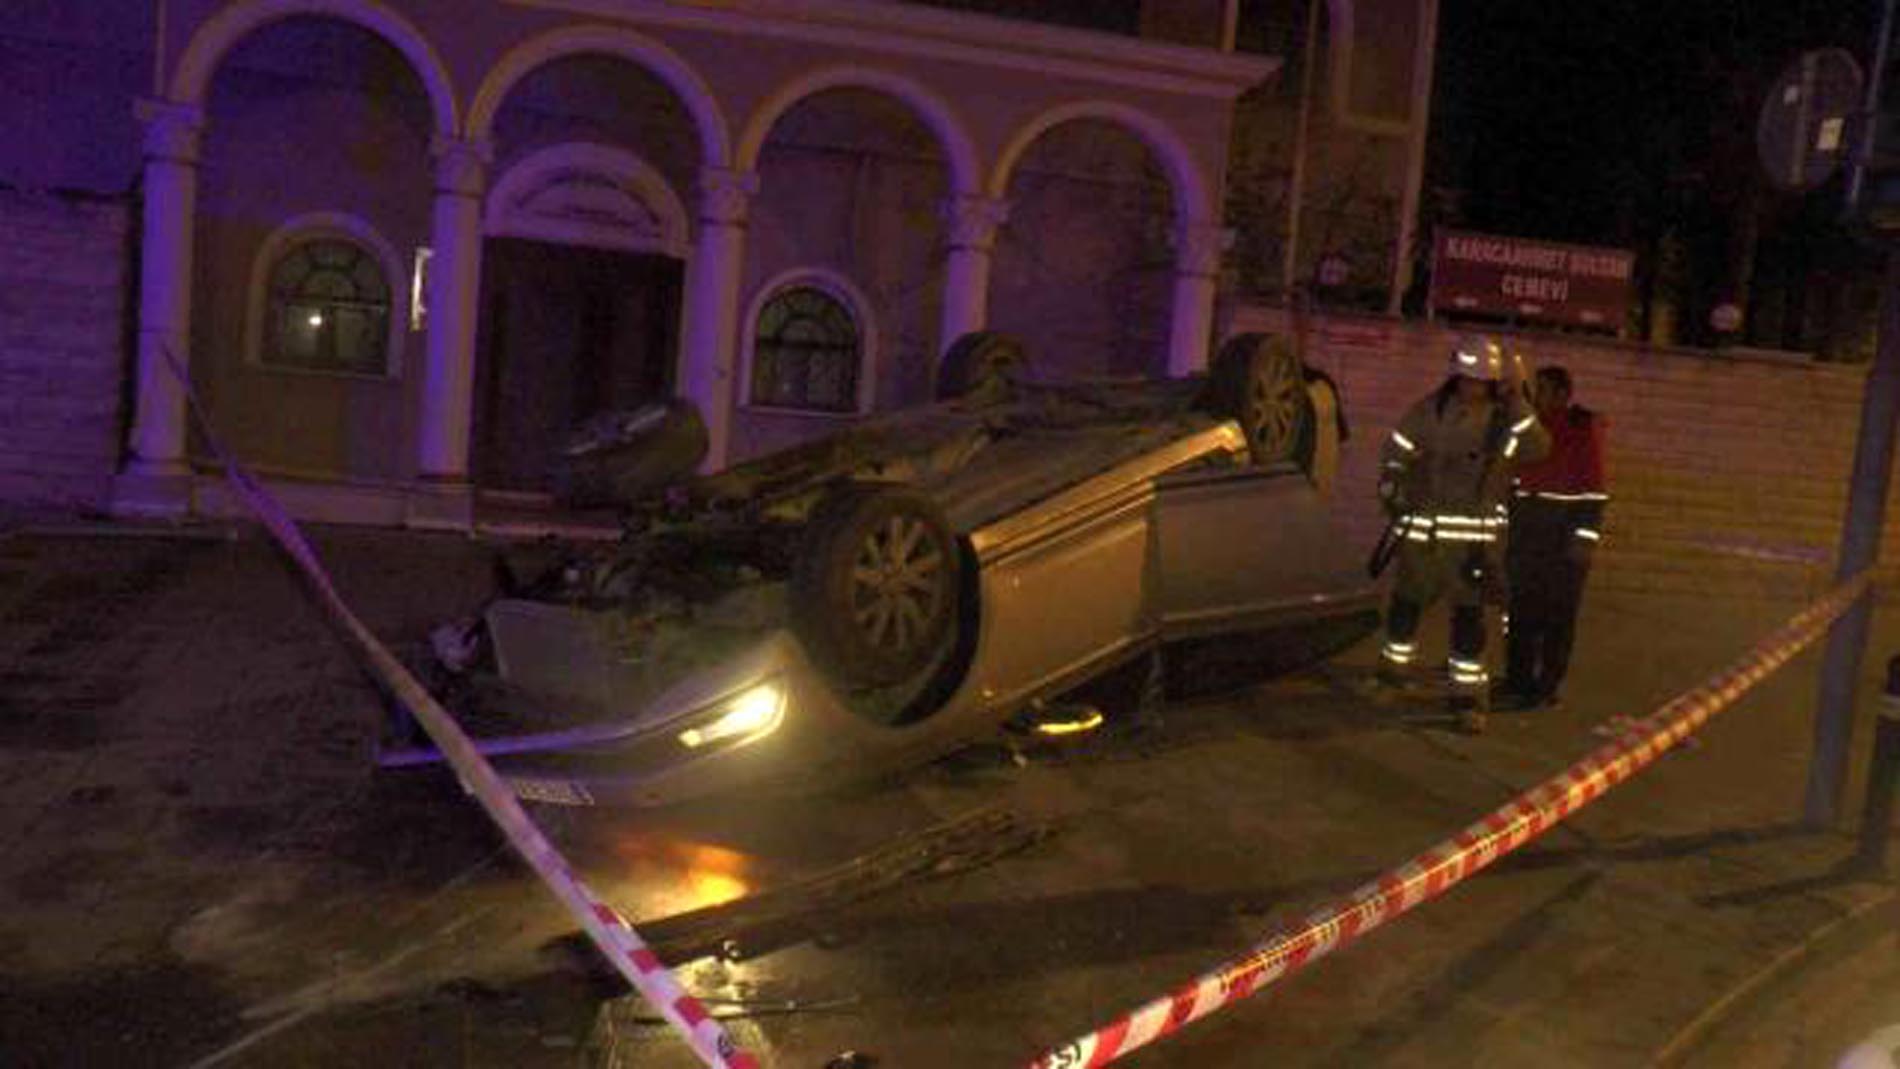 Üsküdar'da lüks araç taklalar atarak savruldu! Araçtan çıkarılan adam sedye üstünde canlı yayın açıp kazayı aktardı!